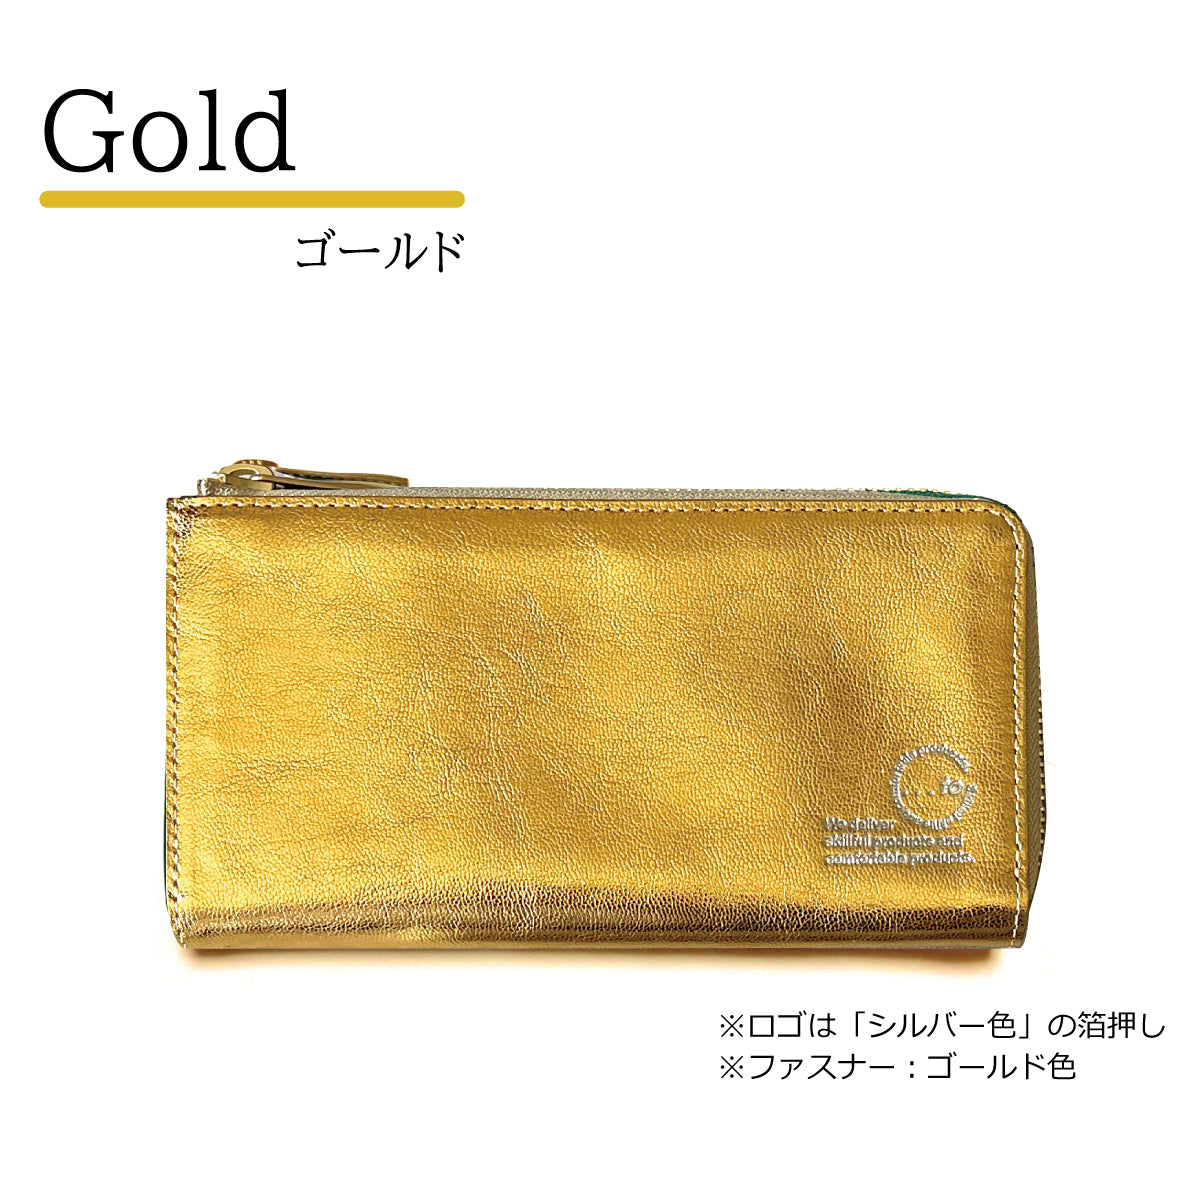 【...to®・Stilvo】Gold & Silver・大きく開いて出し入れ快適「手のひら長財布」全2色